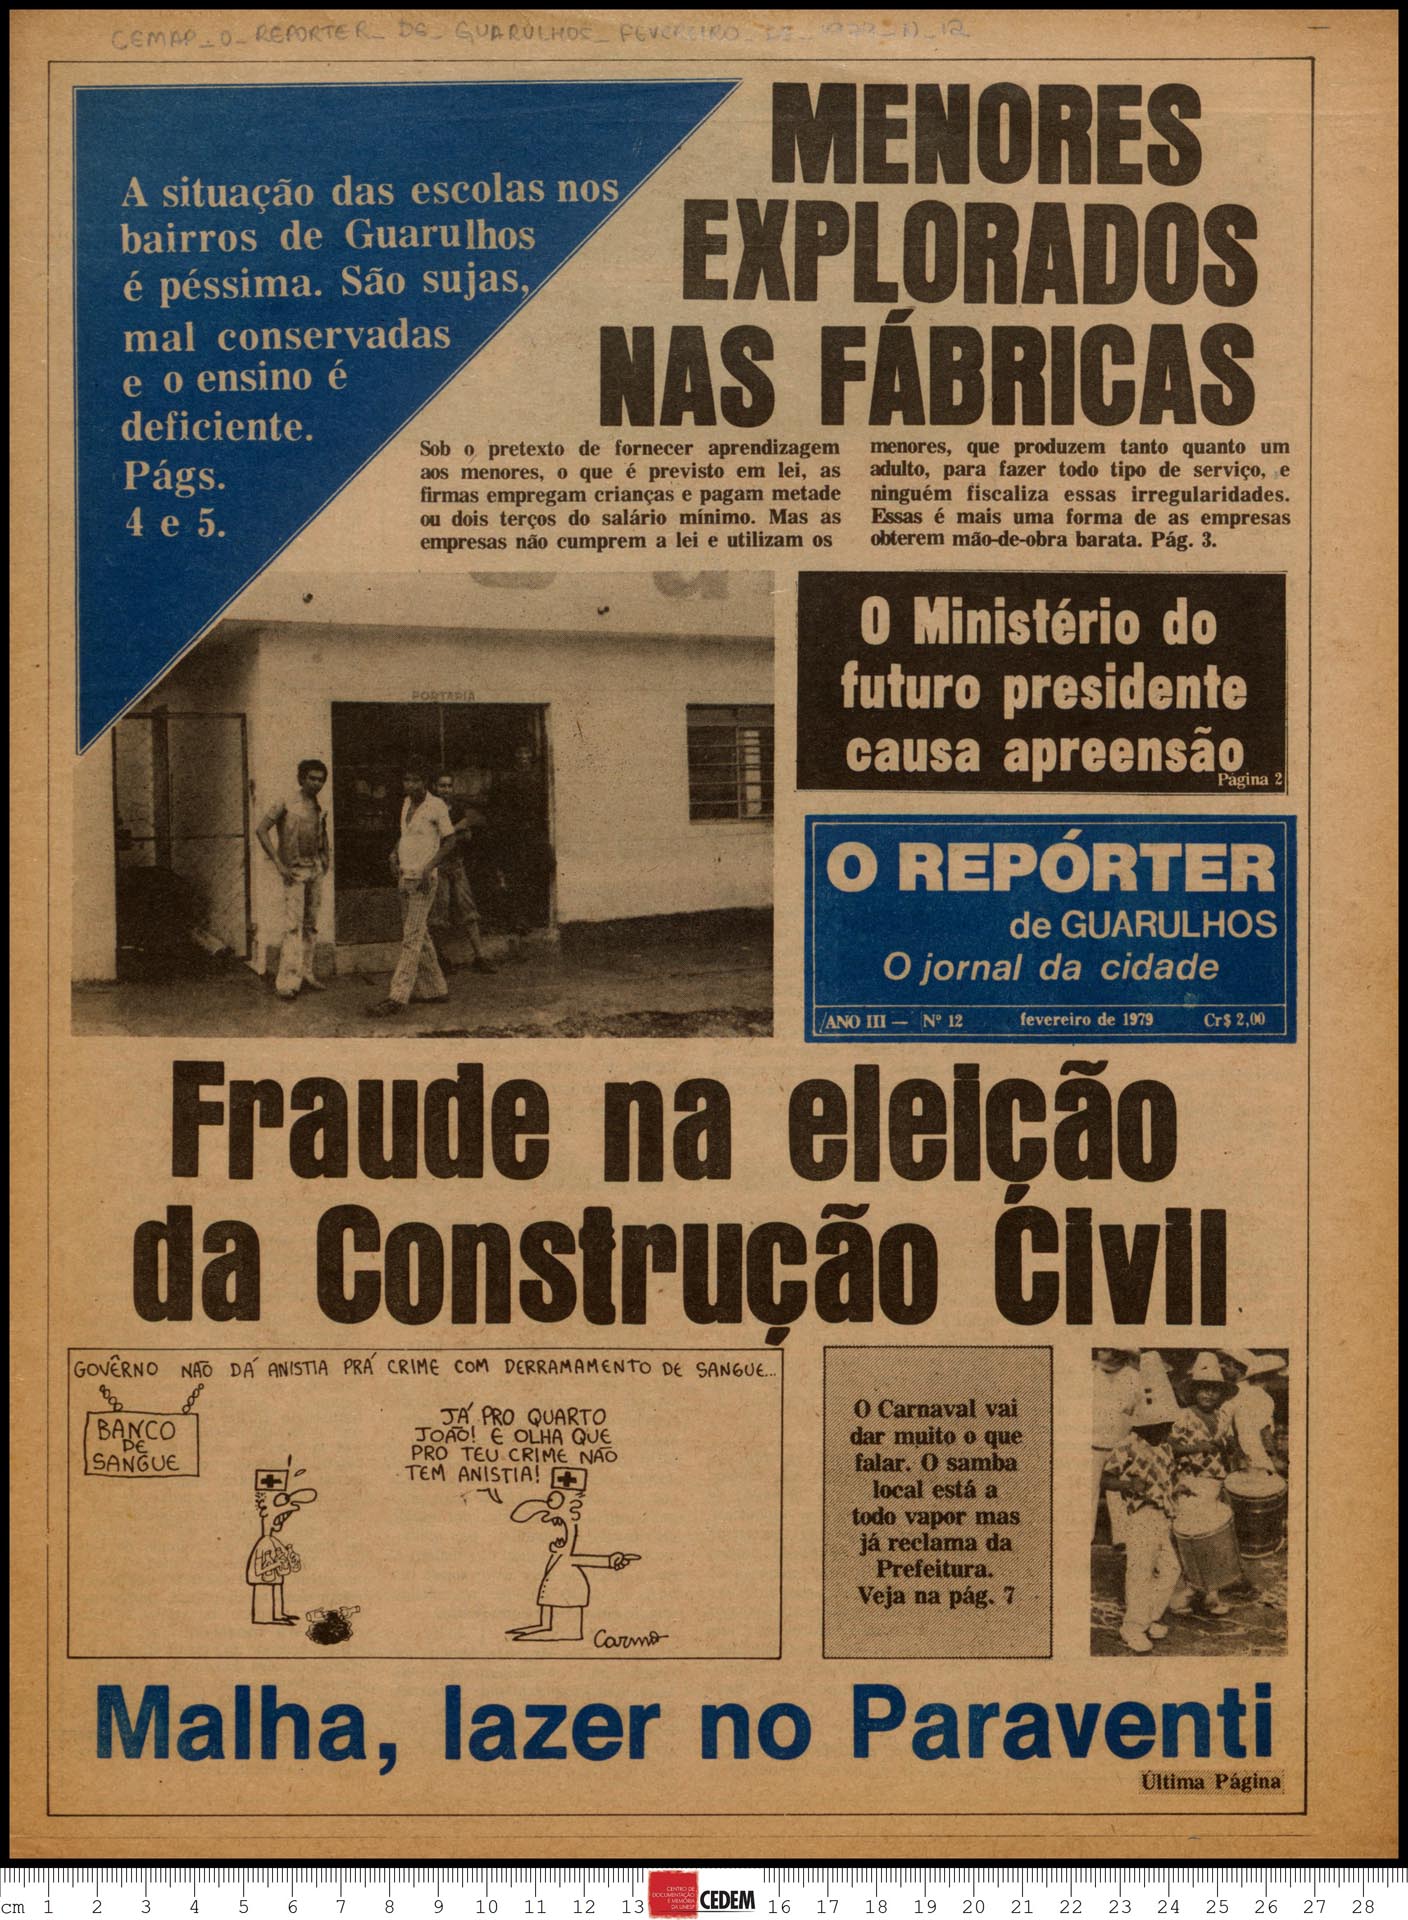 O reportér de Guarulhos - 12 - fev. 1979